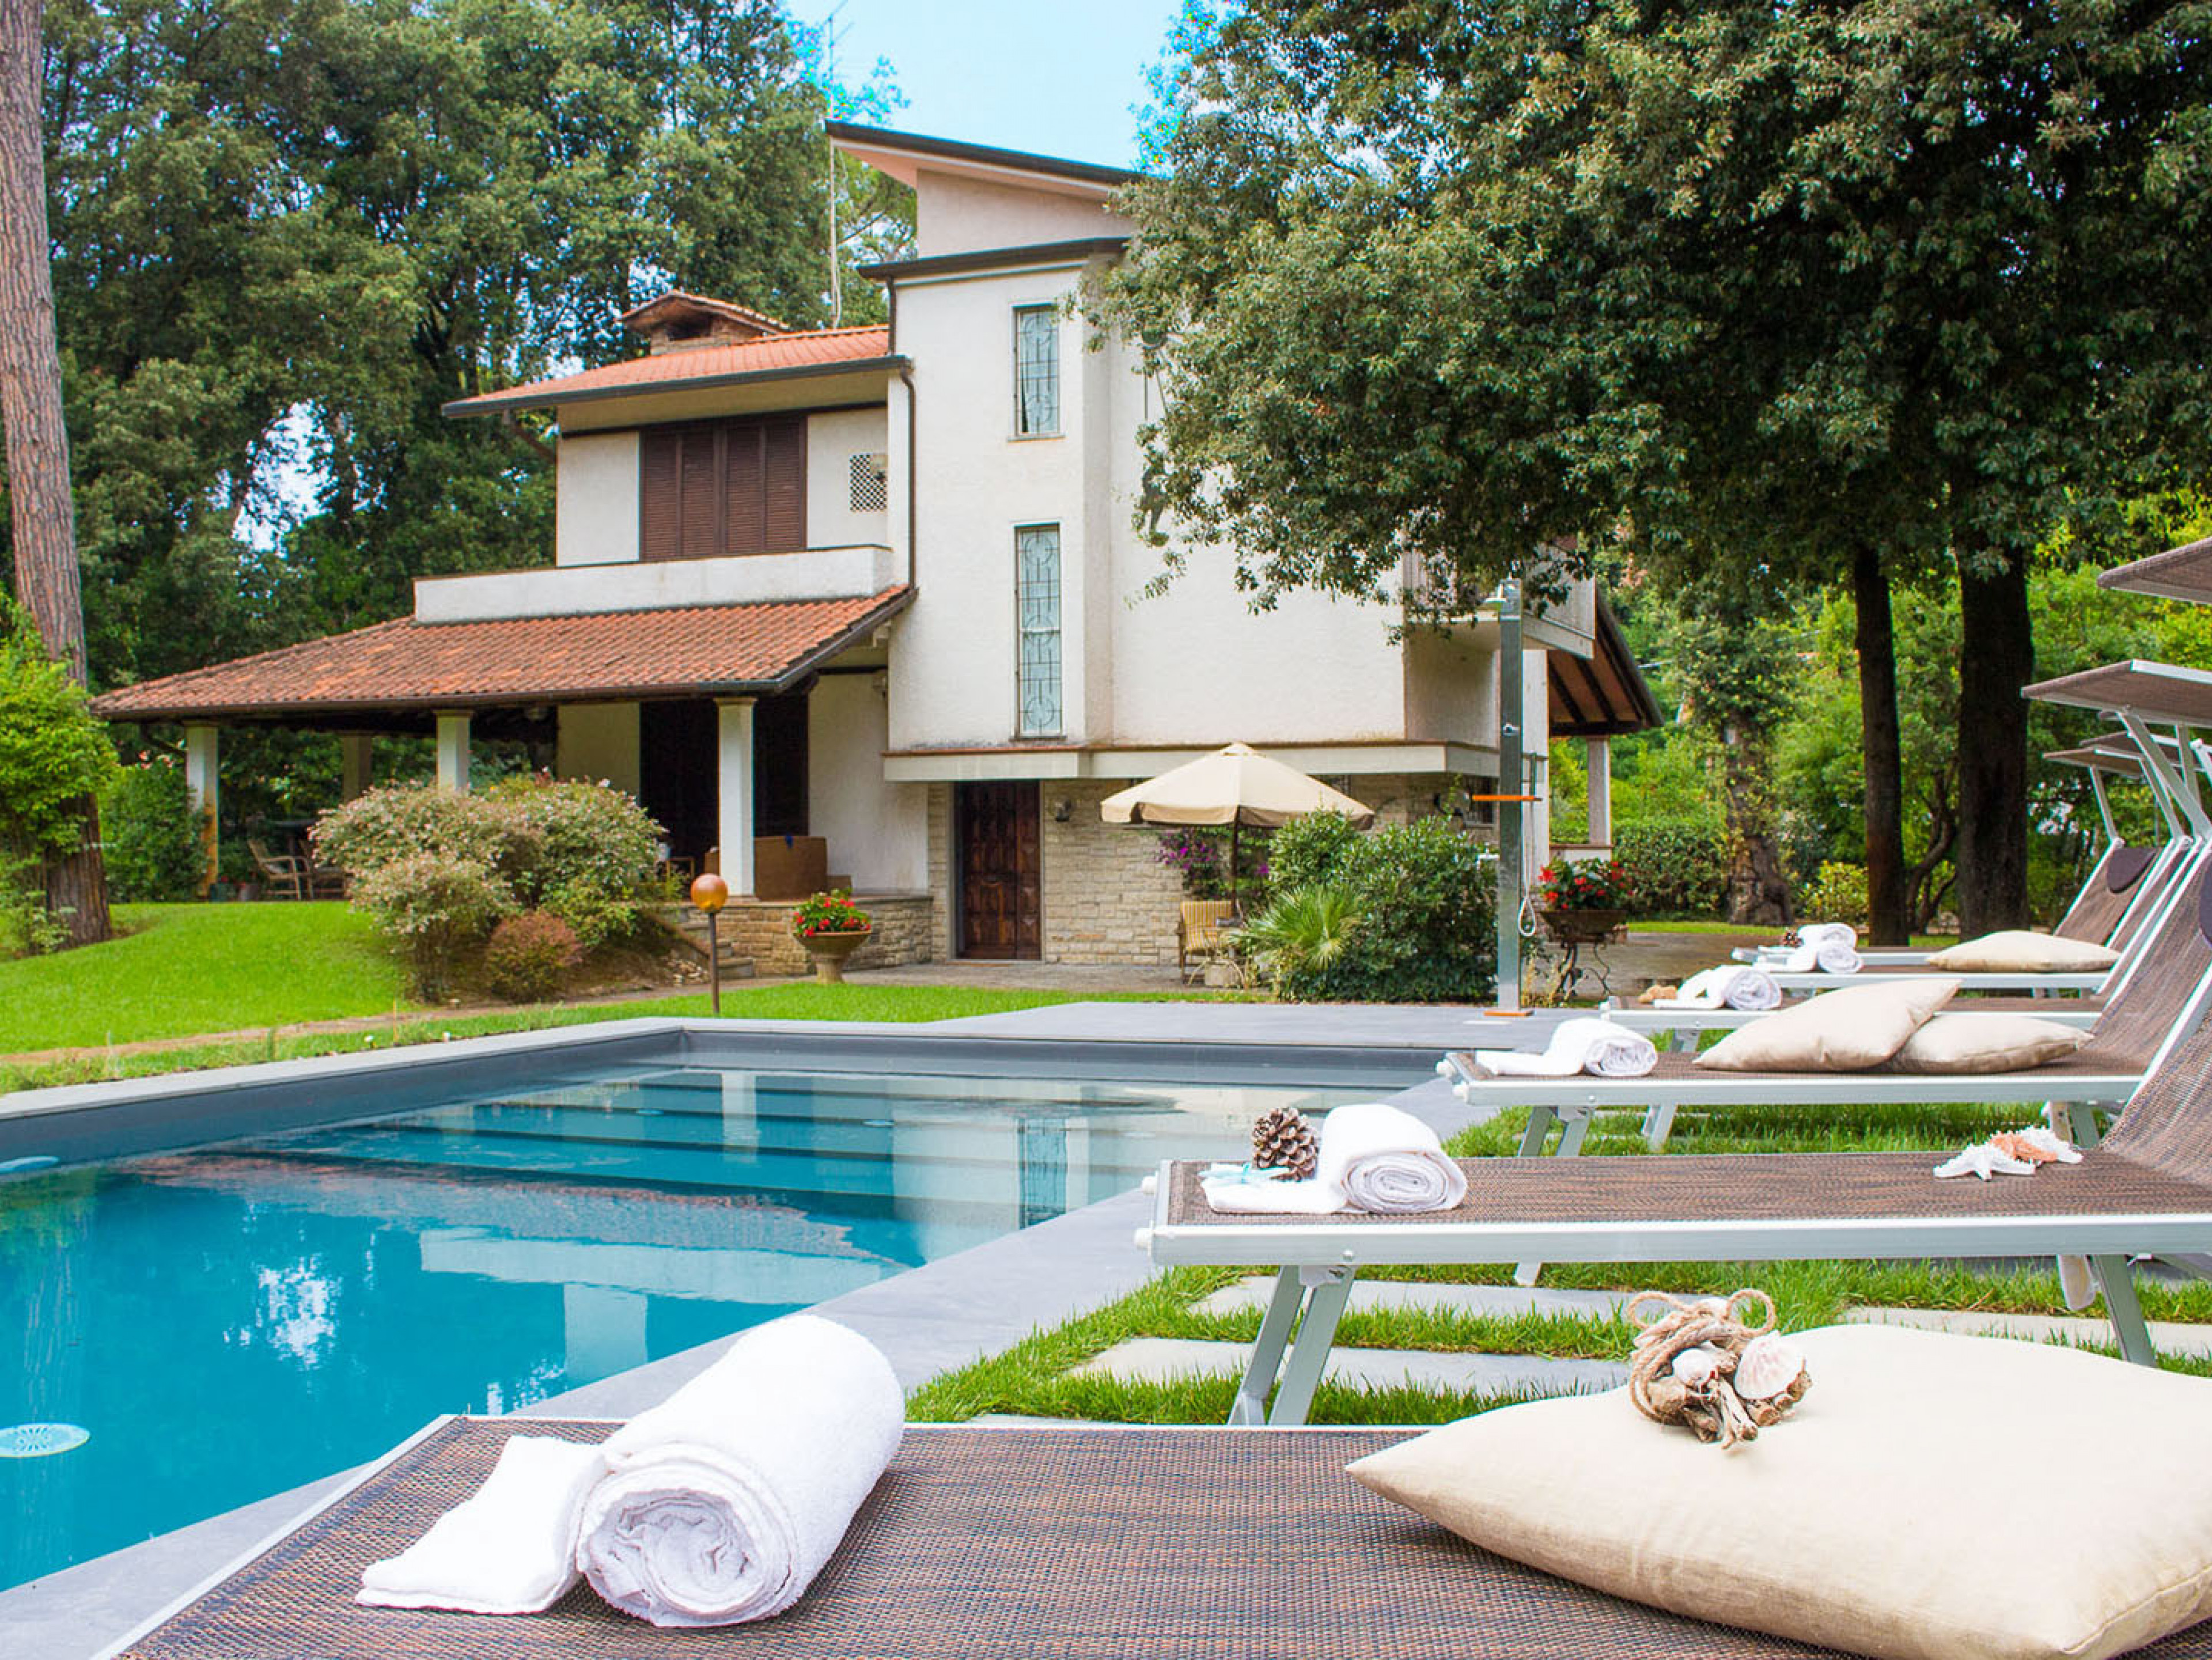 Villa La Meridiana villa in Italy with pool